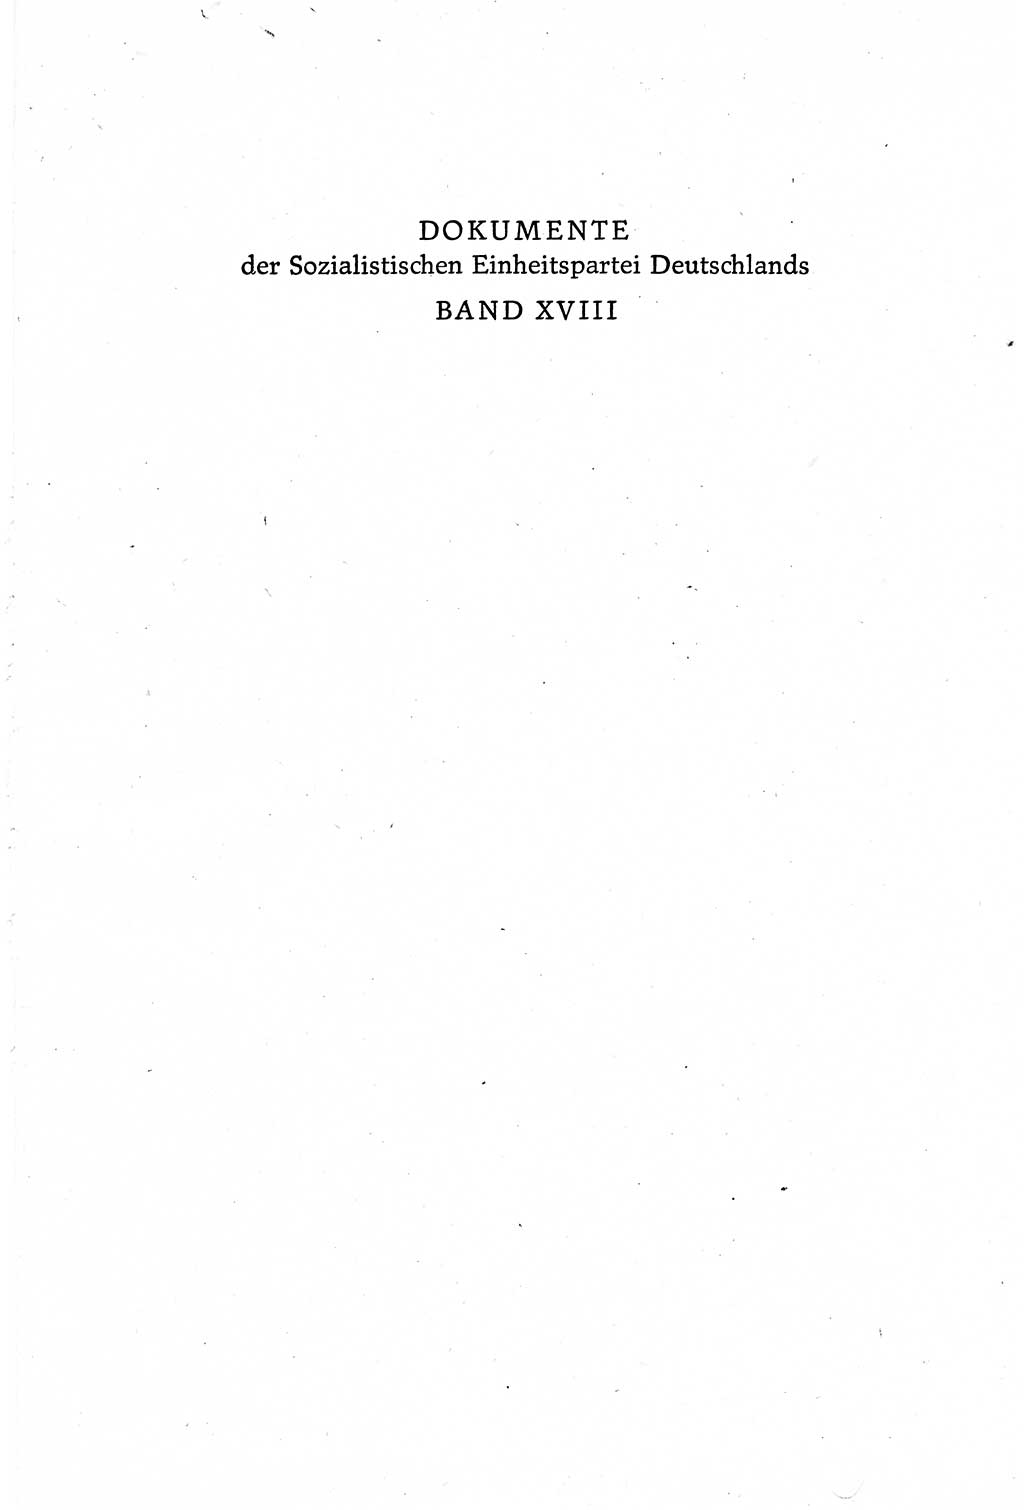 Dokumente der Sozialistischen Einheitspartei Deutschlands (SED) [Deutsche Demokratische Republik (DDR)] 1980-1981, Seite 1 (Dok. SED DDR 1980-1981, S. 1)